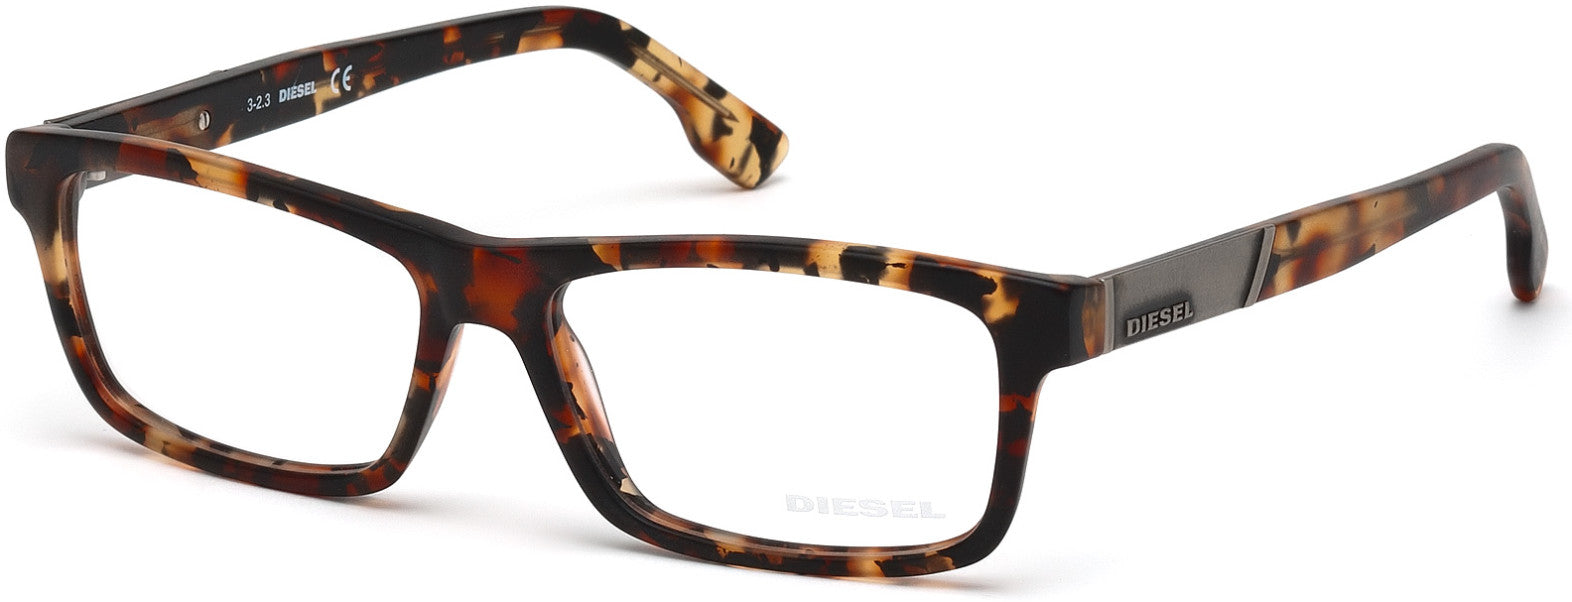 Diesel DL5090 Geometric Eyeglasses 055-055 - Coloured Havana